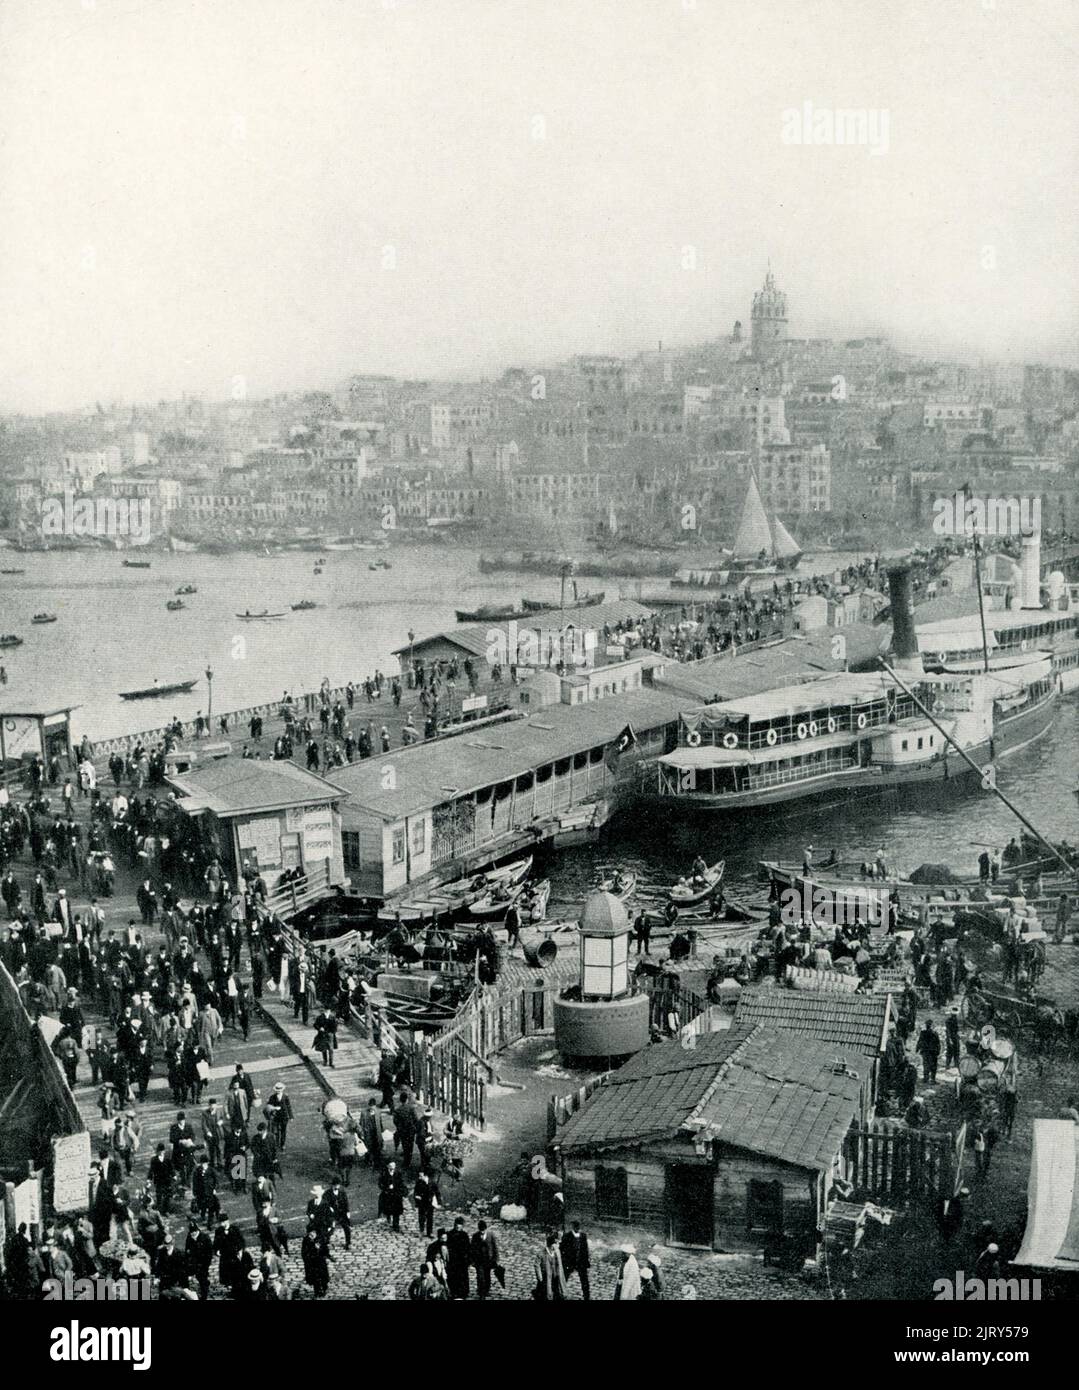 Dieses Foto aus dem Jahr 1913 zeigt die Galata-Brücke in Konstantinopel (vorn.Chr. Istanbul) in der Türkei, die Galata und Pera verbindet. Die Galata-Brücke ist eine Brücke, die das Goldene Horn in Istanbul, Türkei, überspannt. Vor allem seit dem Ende des 19.. Jahrhunderts ist die Brücke in der türkischen Literatur, im Theater, in der Poesie und in Romanen zu finden. Die Brücke verbindet Europa und Asien., Anfang 1900s, Anfang 20. Jahrhundert Stockfoto